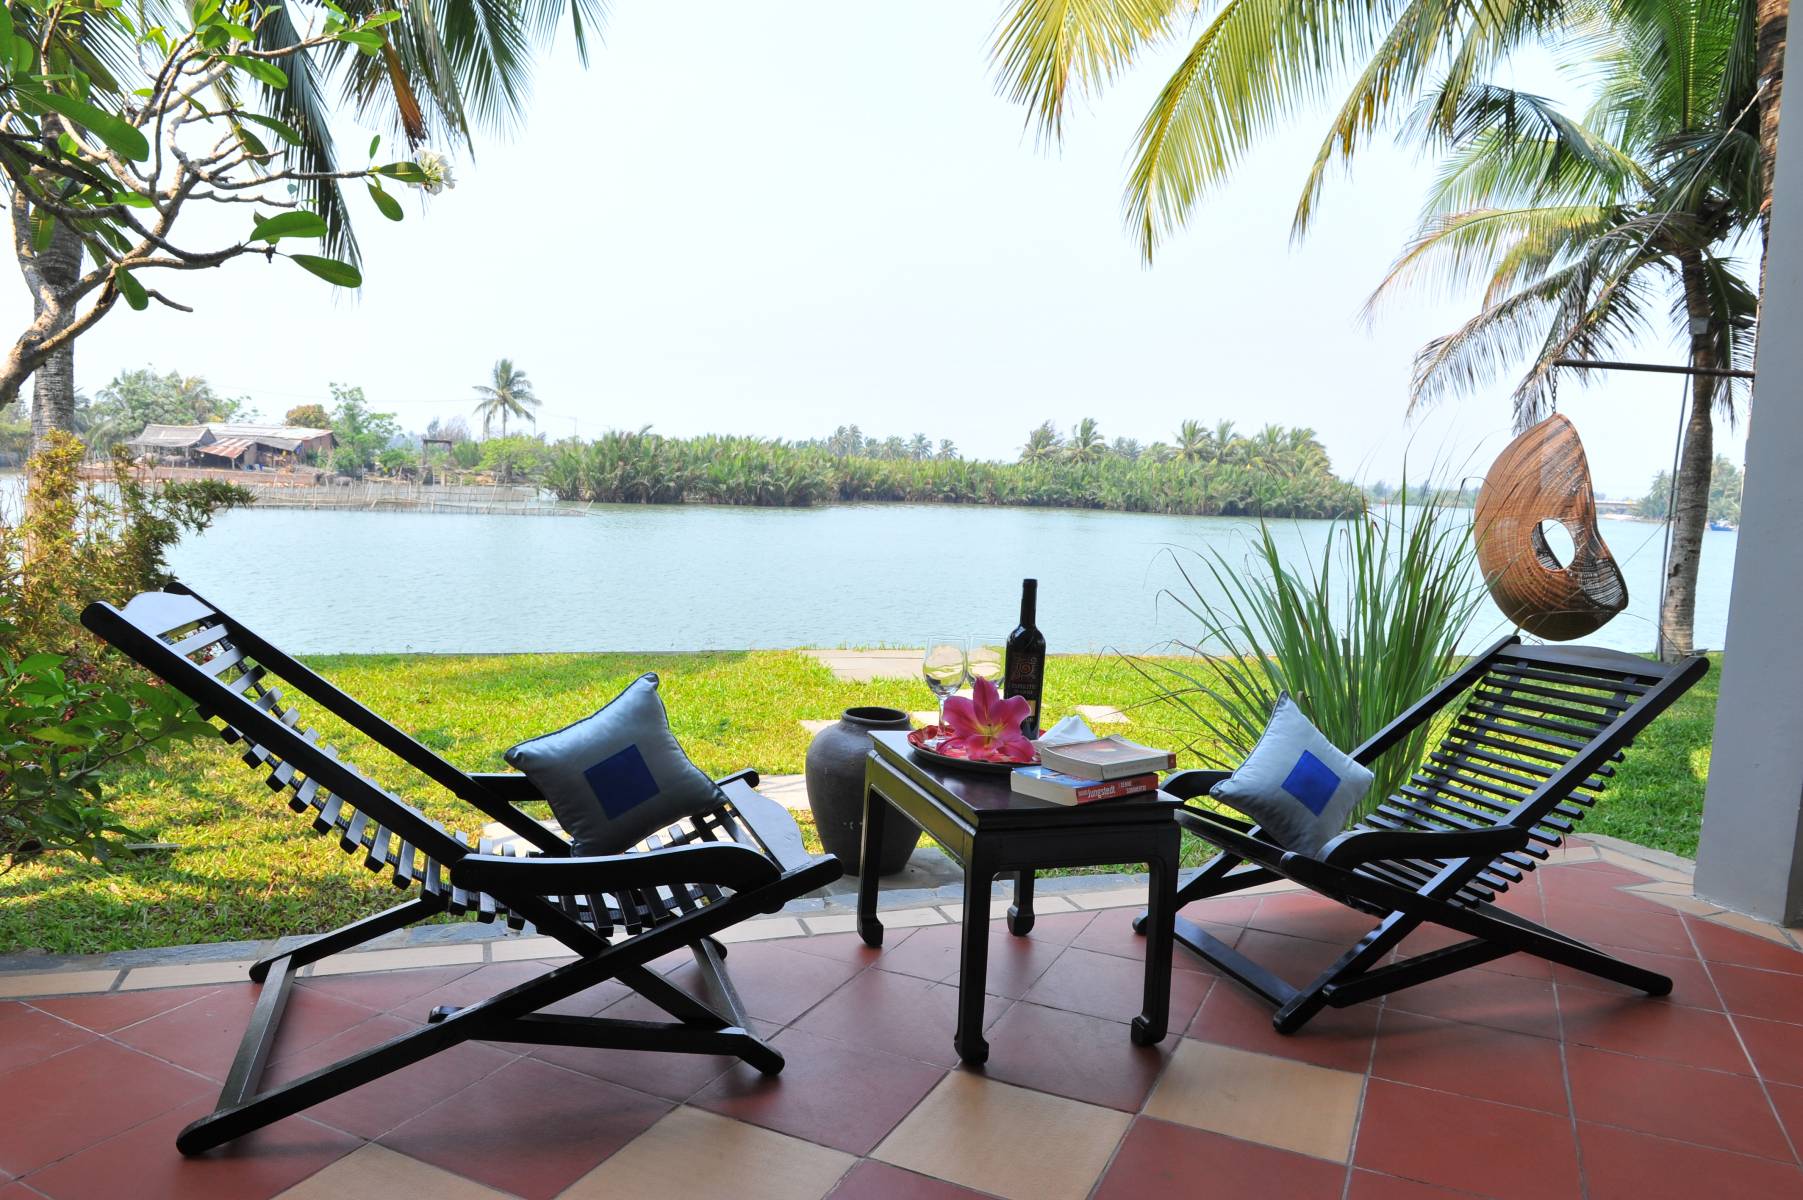 Hoi An Beach Resort - Resort chuẩn 4 sao nơi hội tụ của biển Cửa Đại và sông Đế Võng 3